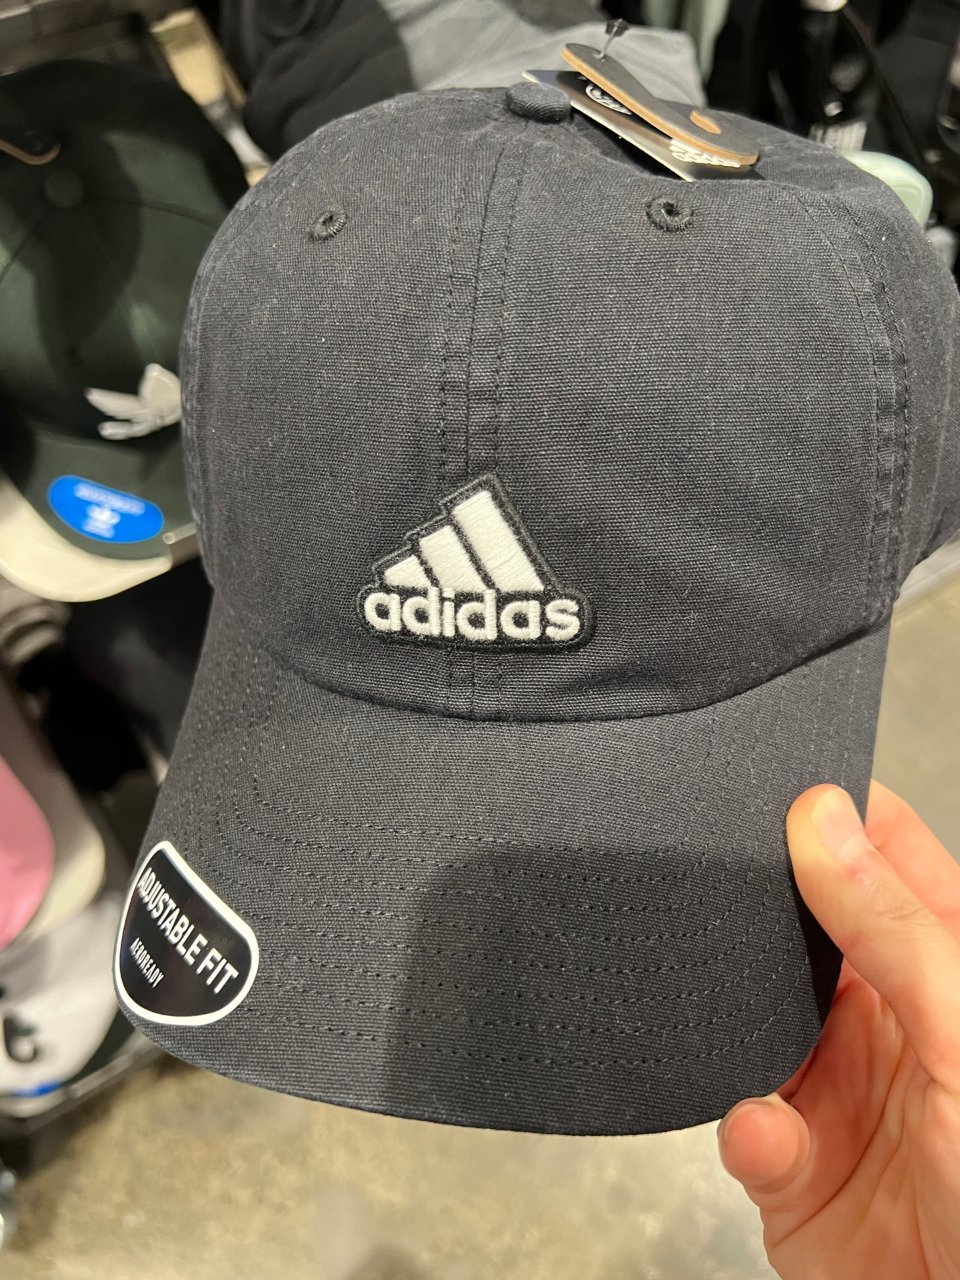 11.11 推荐adidas的这款帽子...